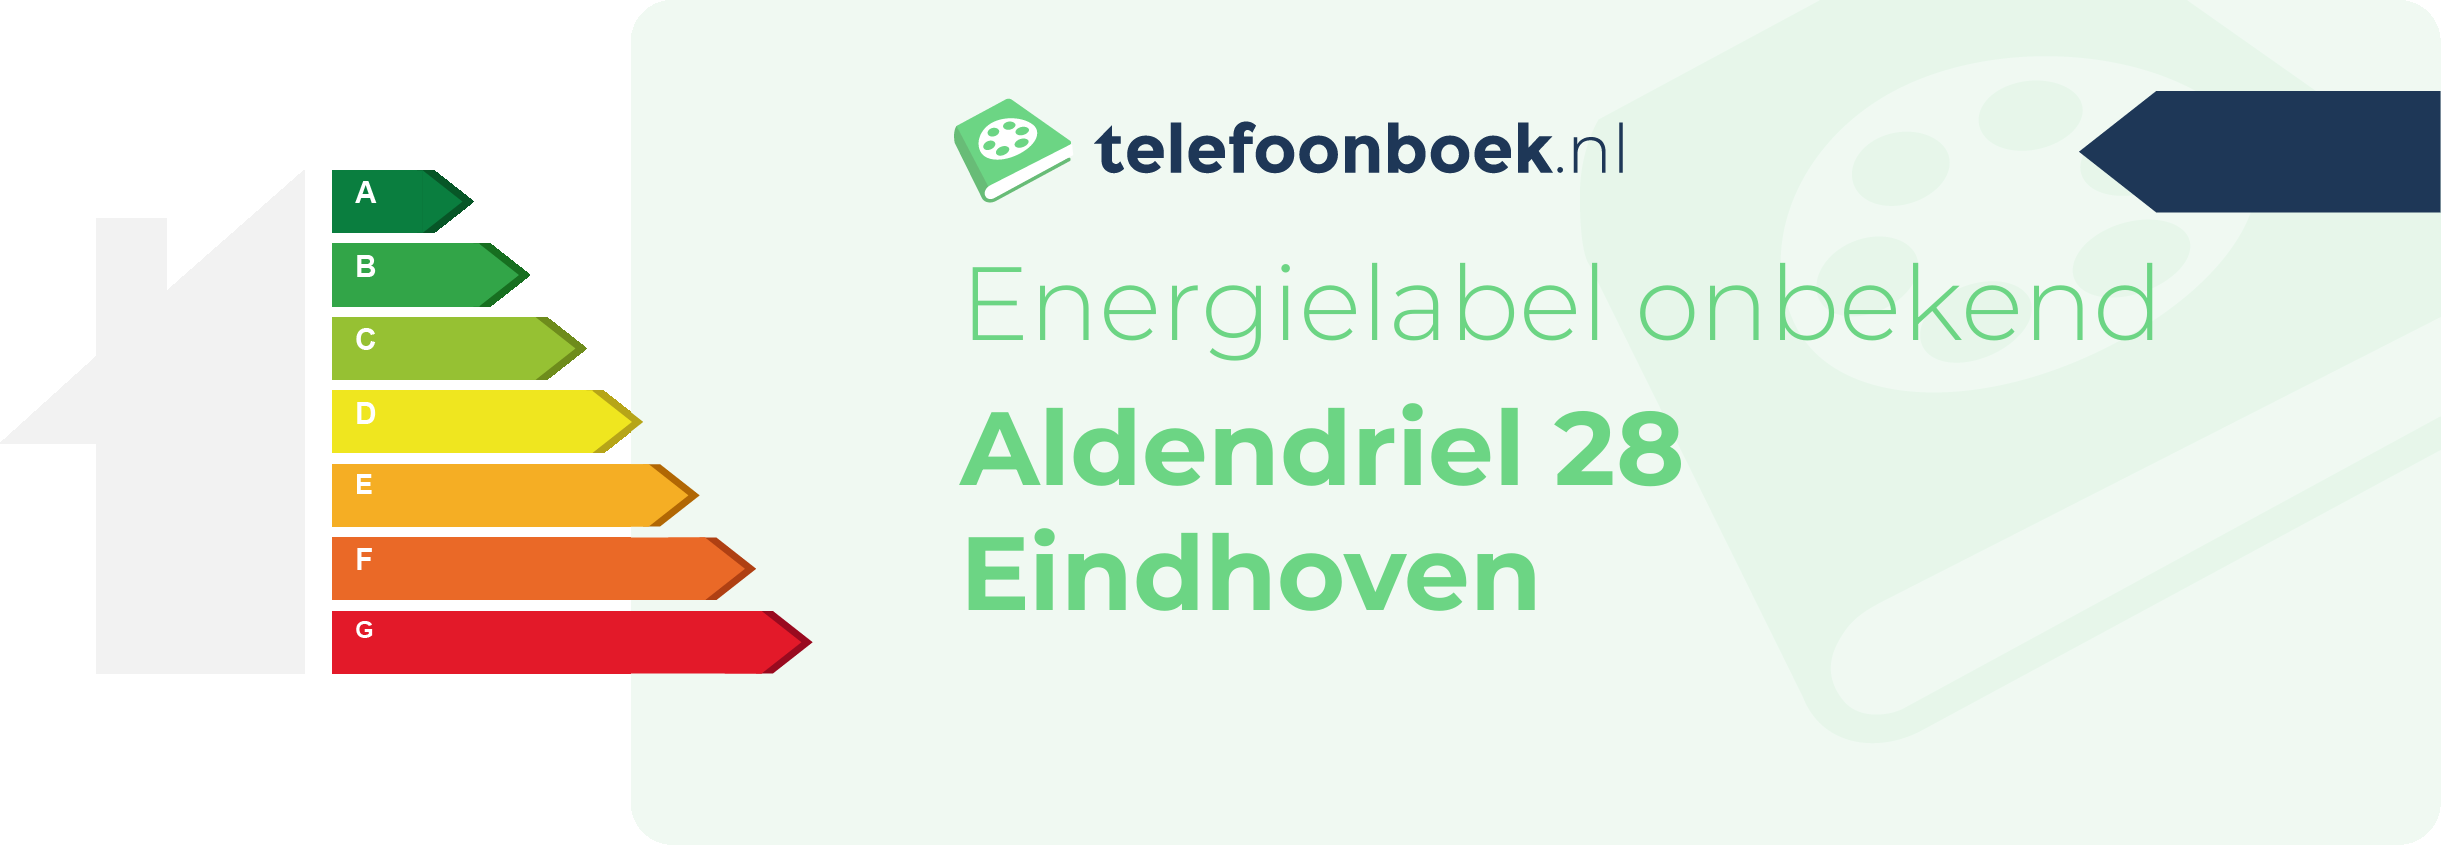 Energielabel Aldendriel 28 Eindhoven